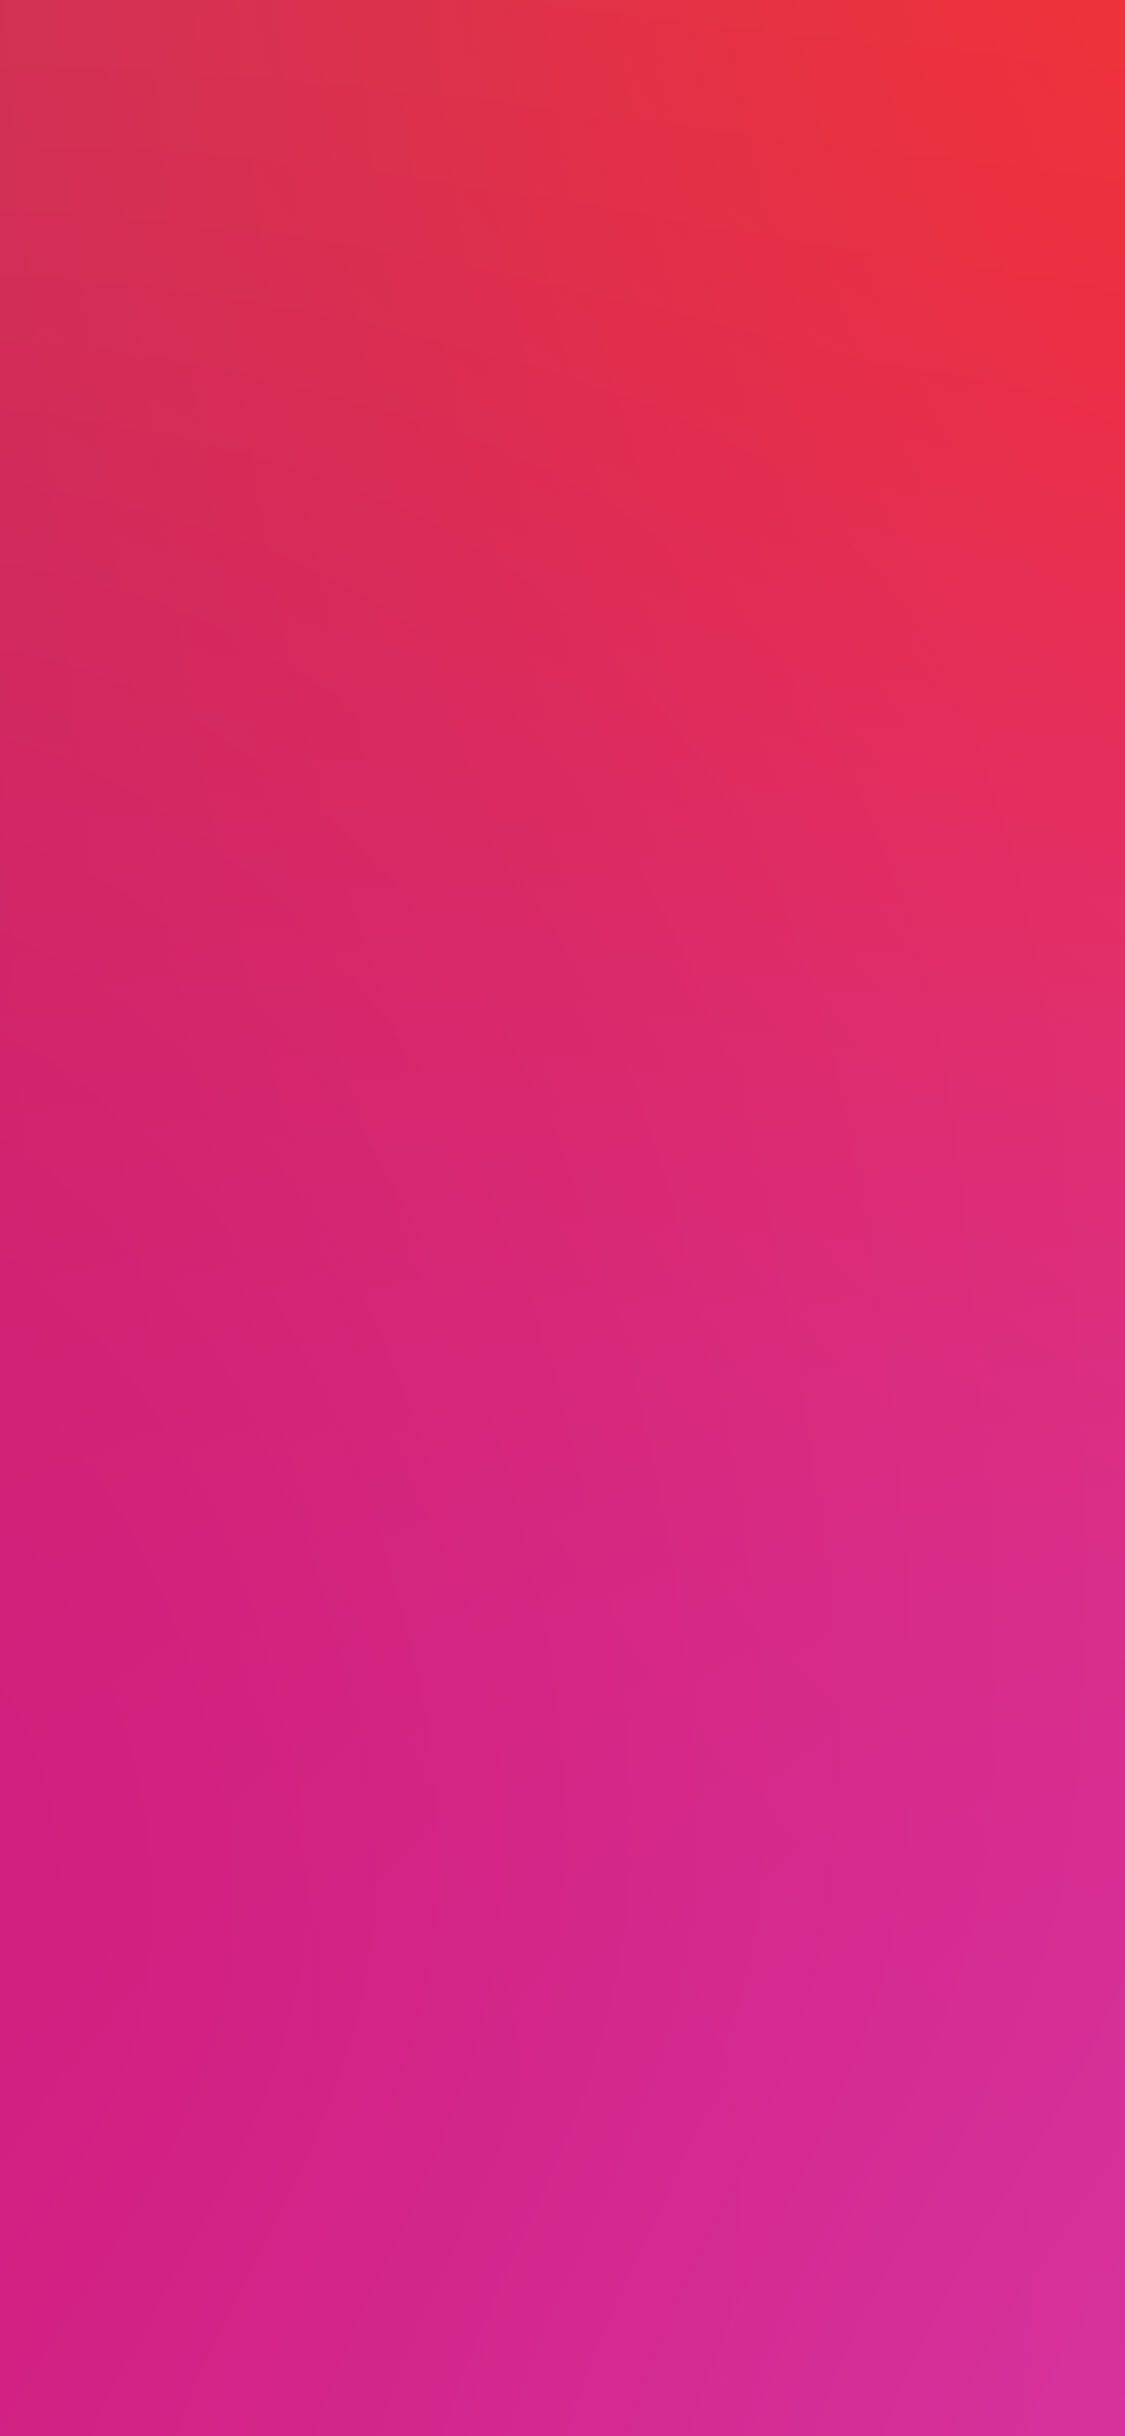 iPhone X wallpaper. hot pink red blur gradation